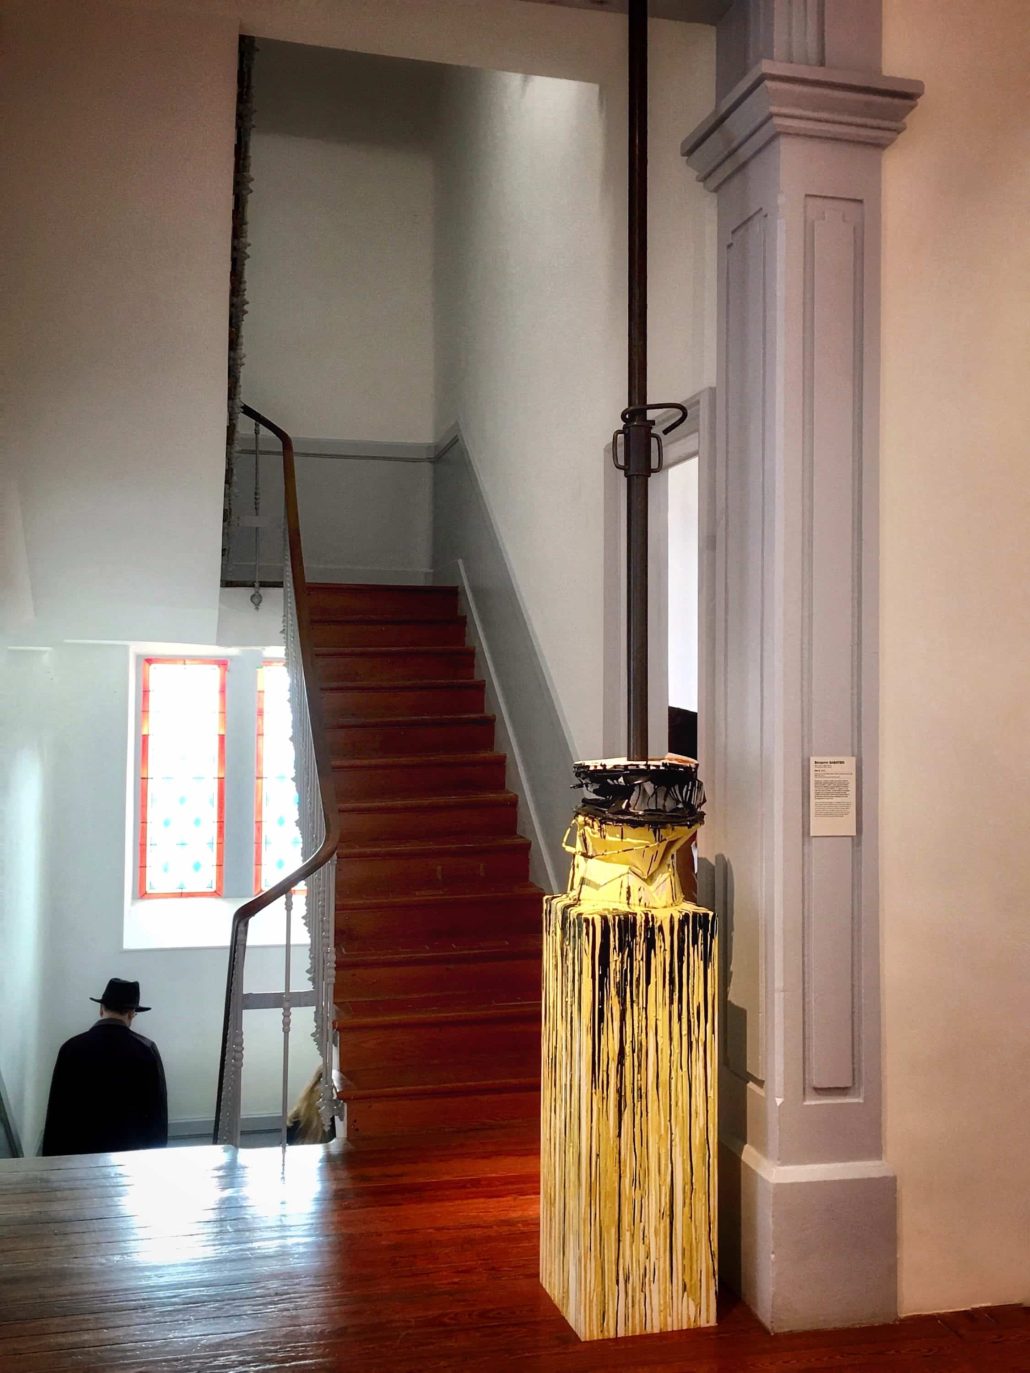 Le fantôme de Magritte…